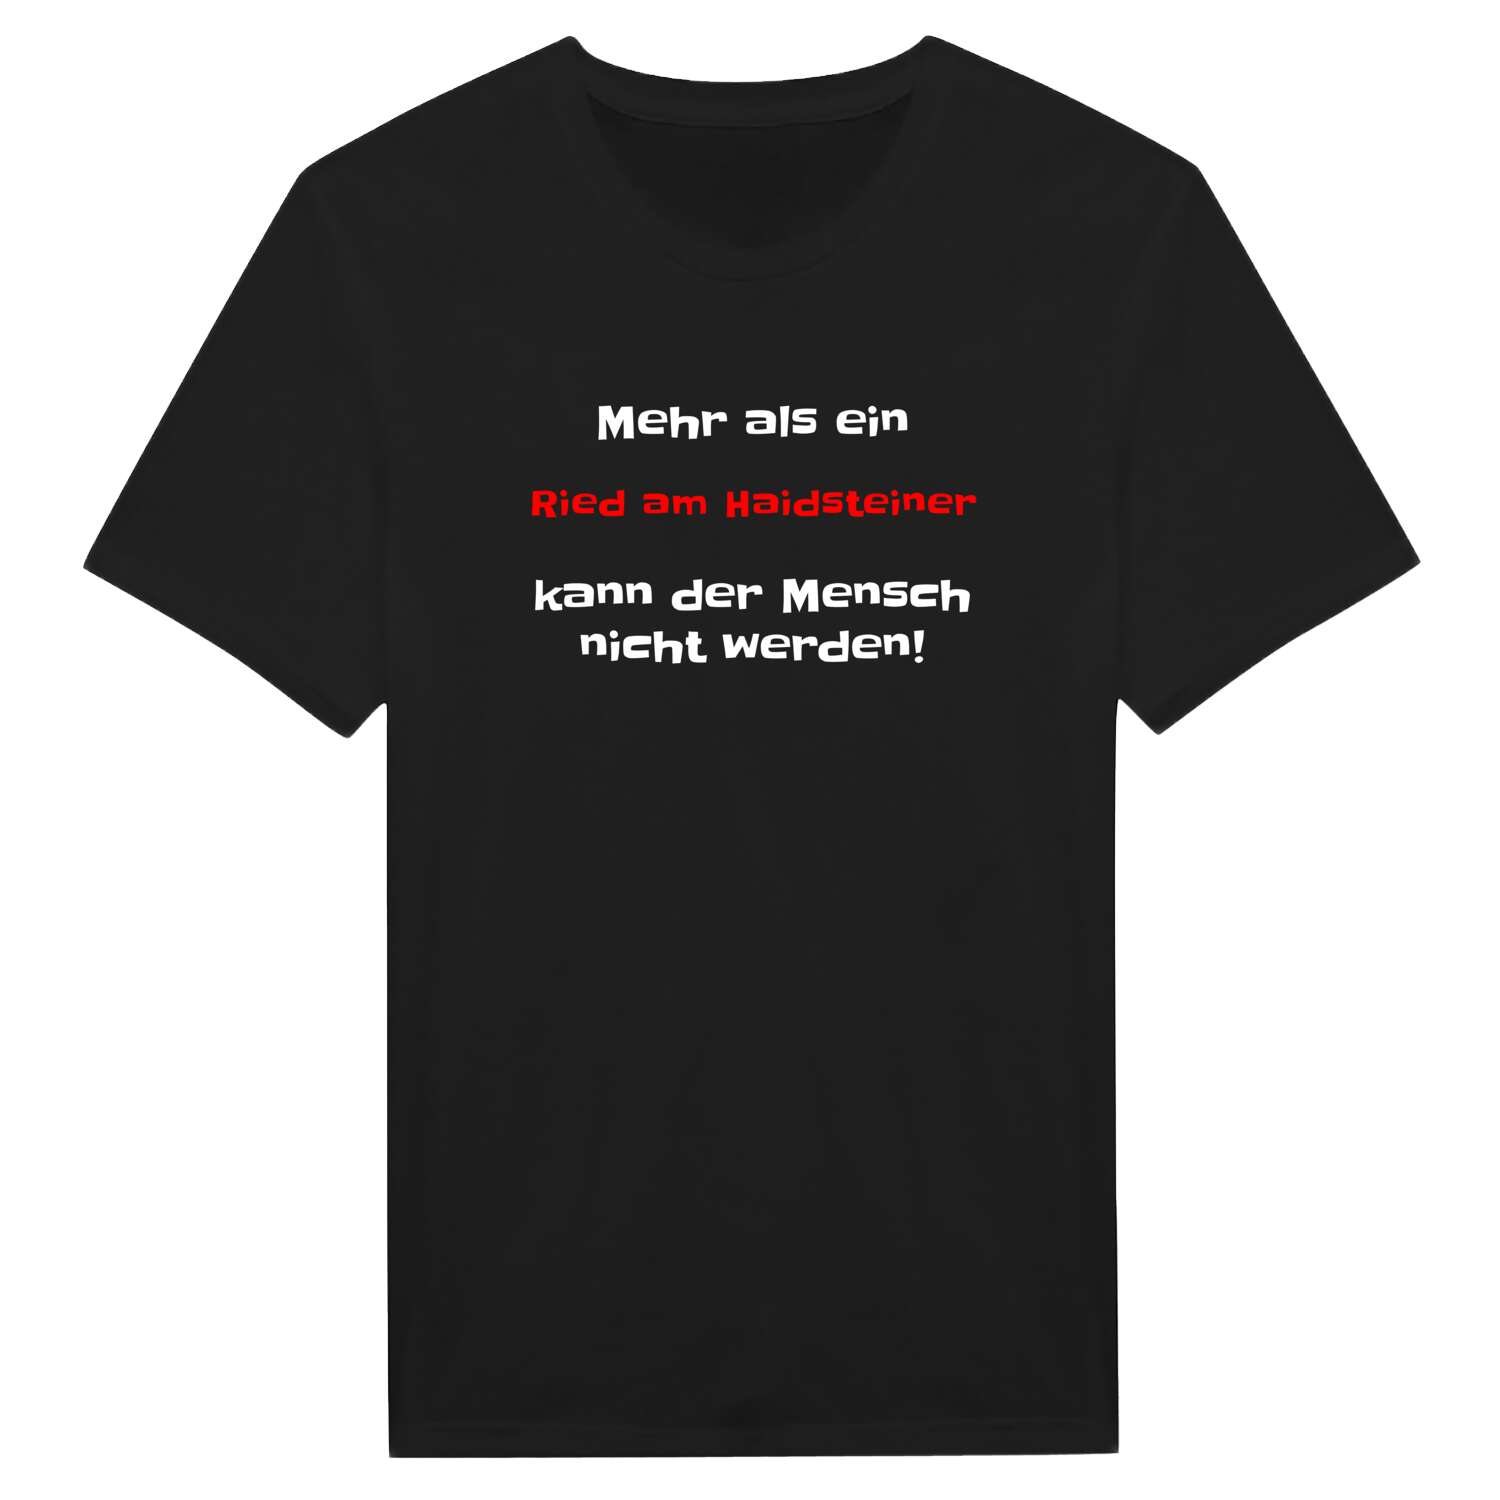 Ried am Haidstein T-Shirt »Mehr als ein«